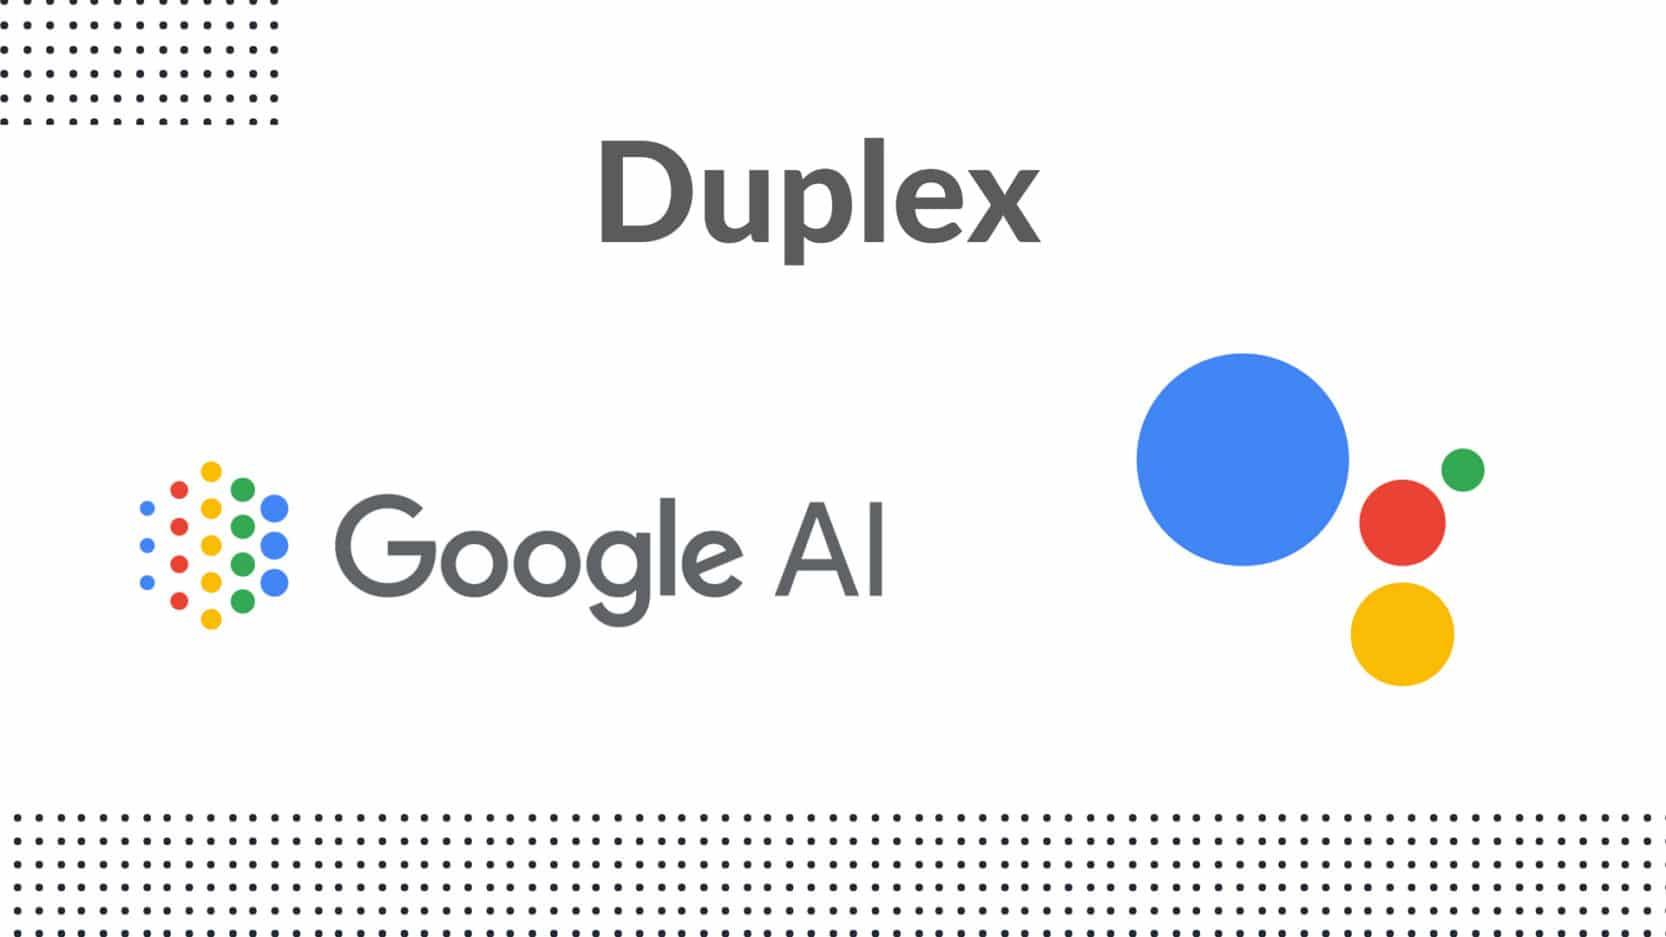 جوجل دوبليكس: خطوة جديدة من جوجل لتسهيل حياتك باستخدام الذكاء الاصطناعي